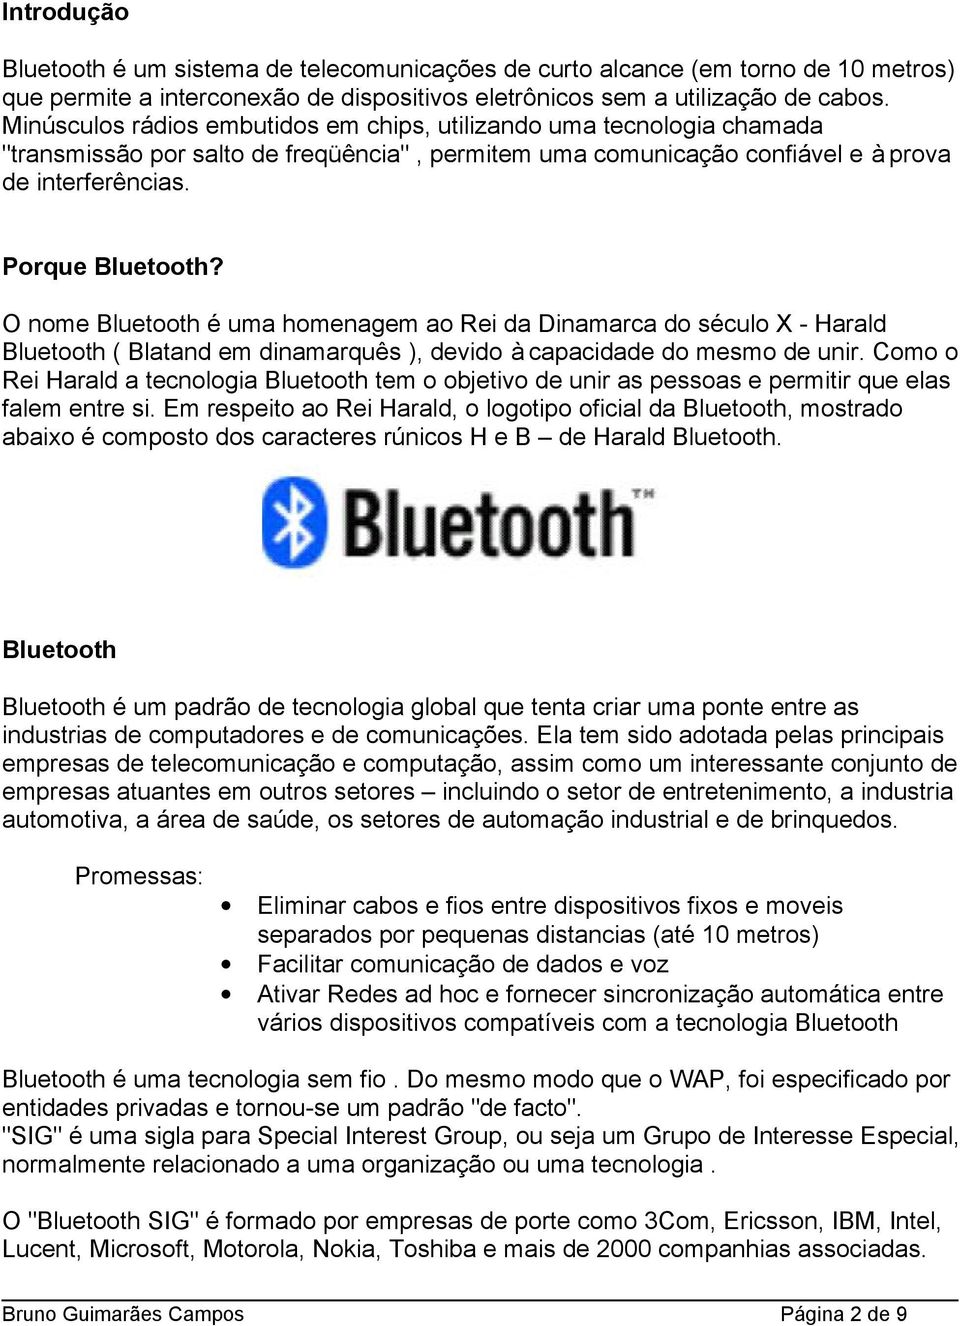 O nome Bluetooth é uma homenagem ao Rei da Dinamarca do século X - Harald Bluetooth ( Blatand em dinamarquês ), devido à capacidade do mesmo de unir.